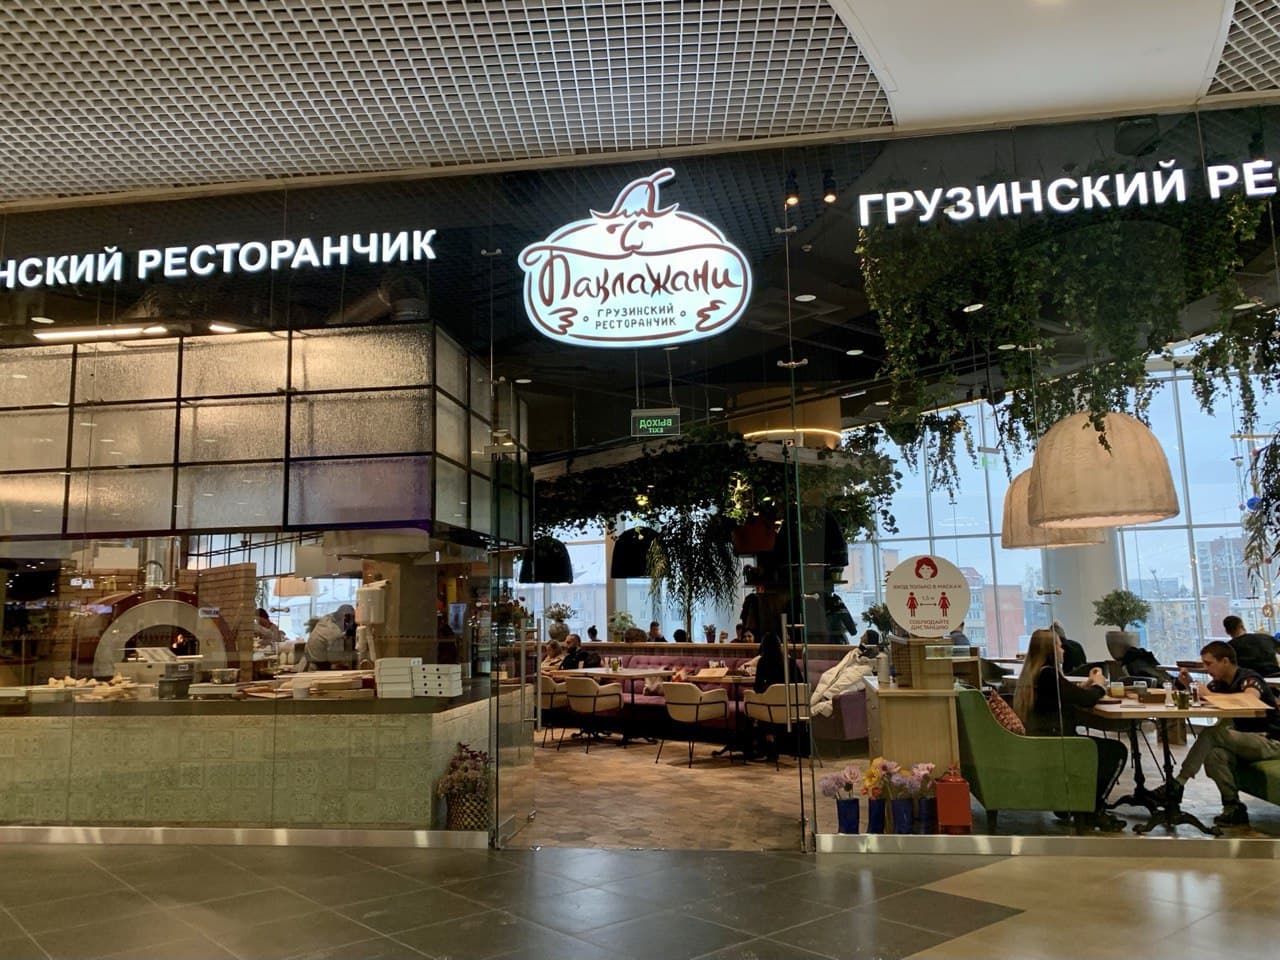 Ресторан грузинской кухни «Баклажани» в ТРЦ «Галерея Новосибирск»